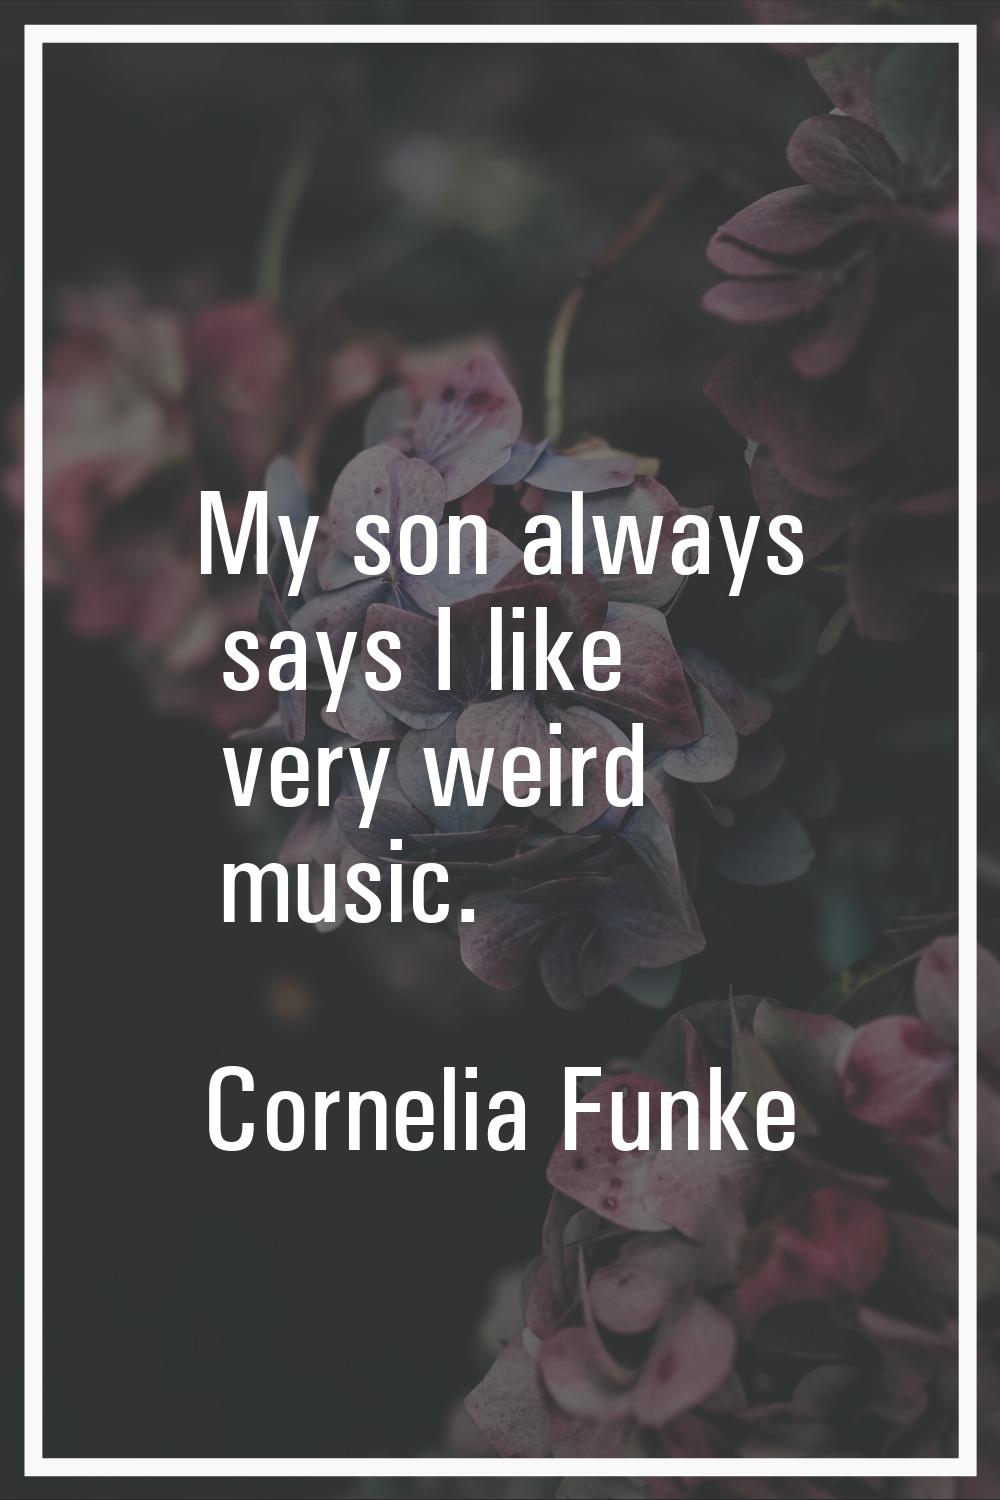 My son always says I like very weird music.